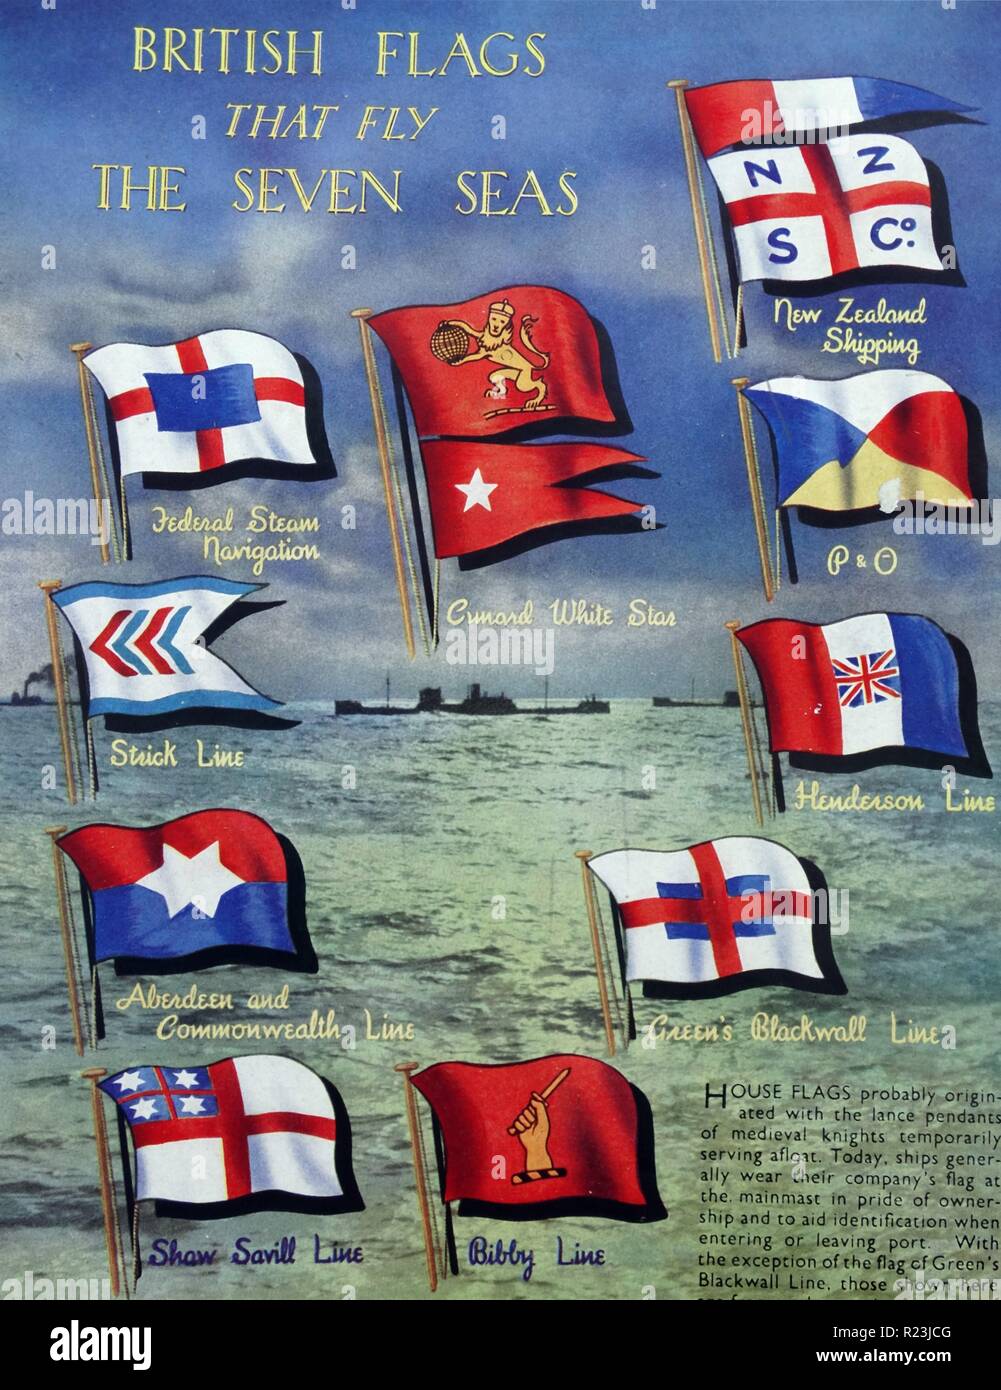 Affiche en couleur représentant les drapeaux britanniques qui volent les sept mers. Centre à droite : Cunard White Star ; Nouvelle-Zélande Voyage ; P&O ; Henderson ; ligne ; ligne Blackwall Vert Bibby Line ; Shaw Savill Ligne ; Aberdeen et du Commonwealth ; ligne ; ligne bâton fédéral navigation à vapeur ; Date 1939 Banque D'Images